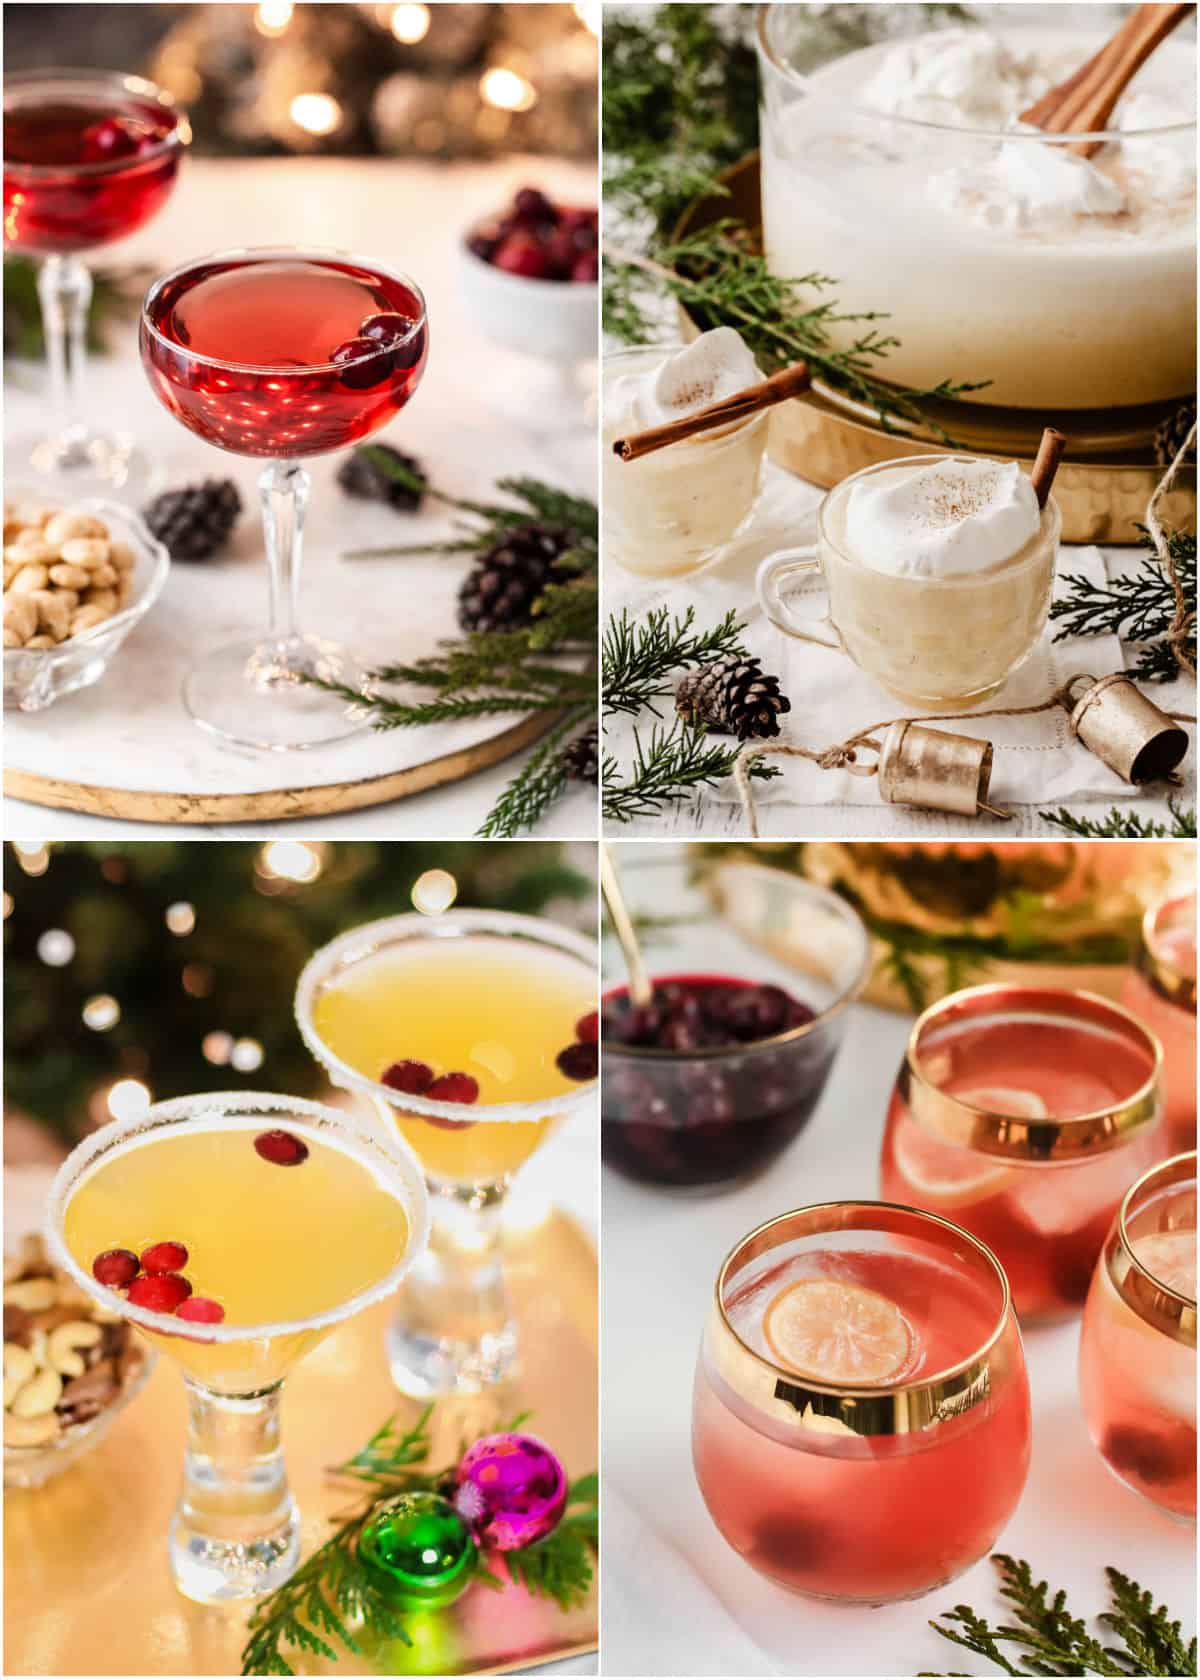 https://celebrationsathomeblog.com/wp-content/uploads/2010/11/best-Christmas-cocktails.jpg